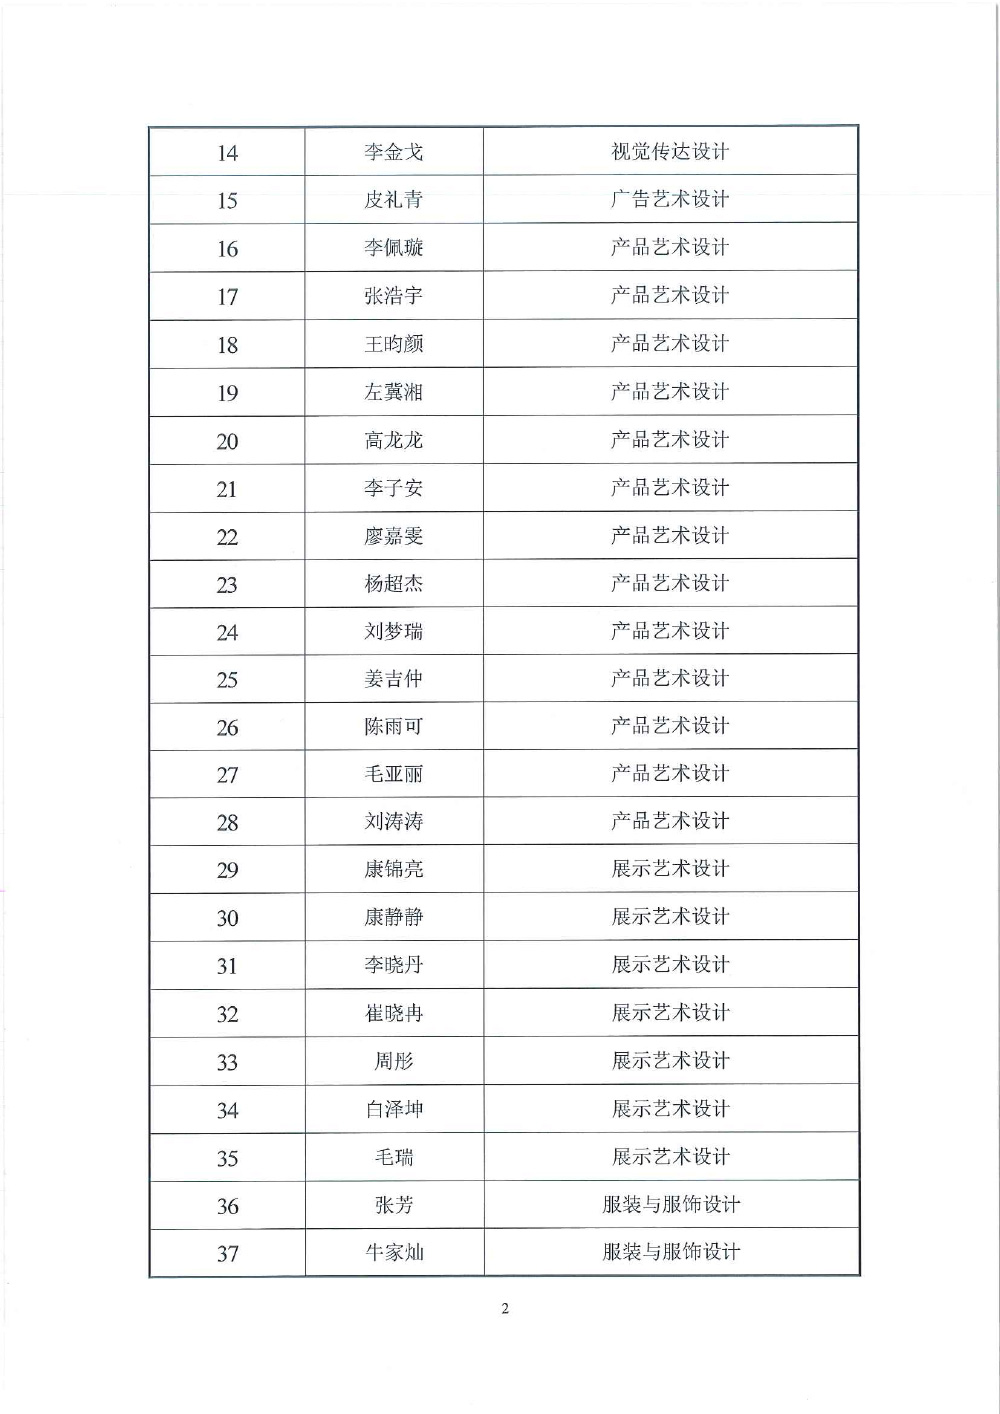 关于天津市求职创业补贴工作的公示(1)-2.jpg